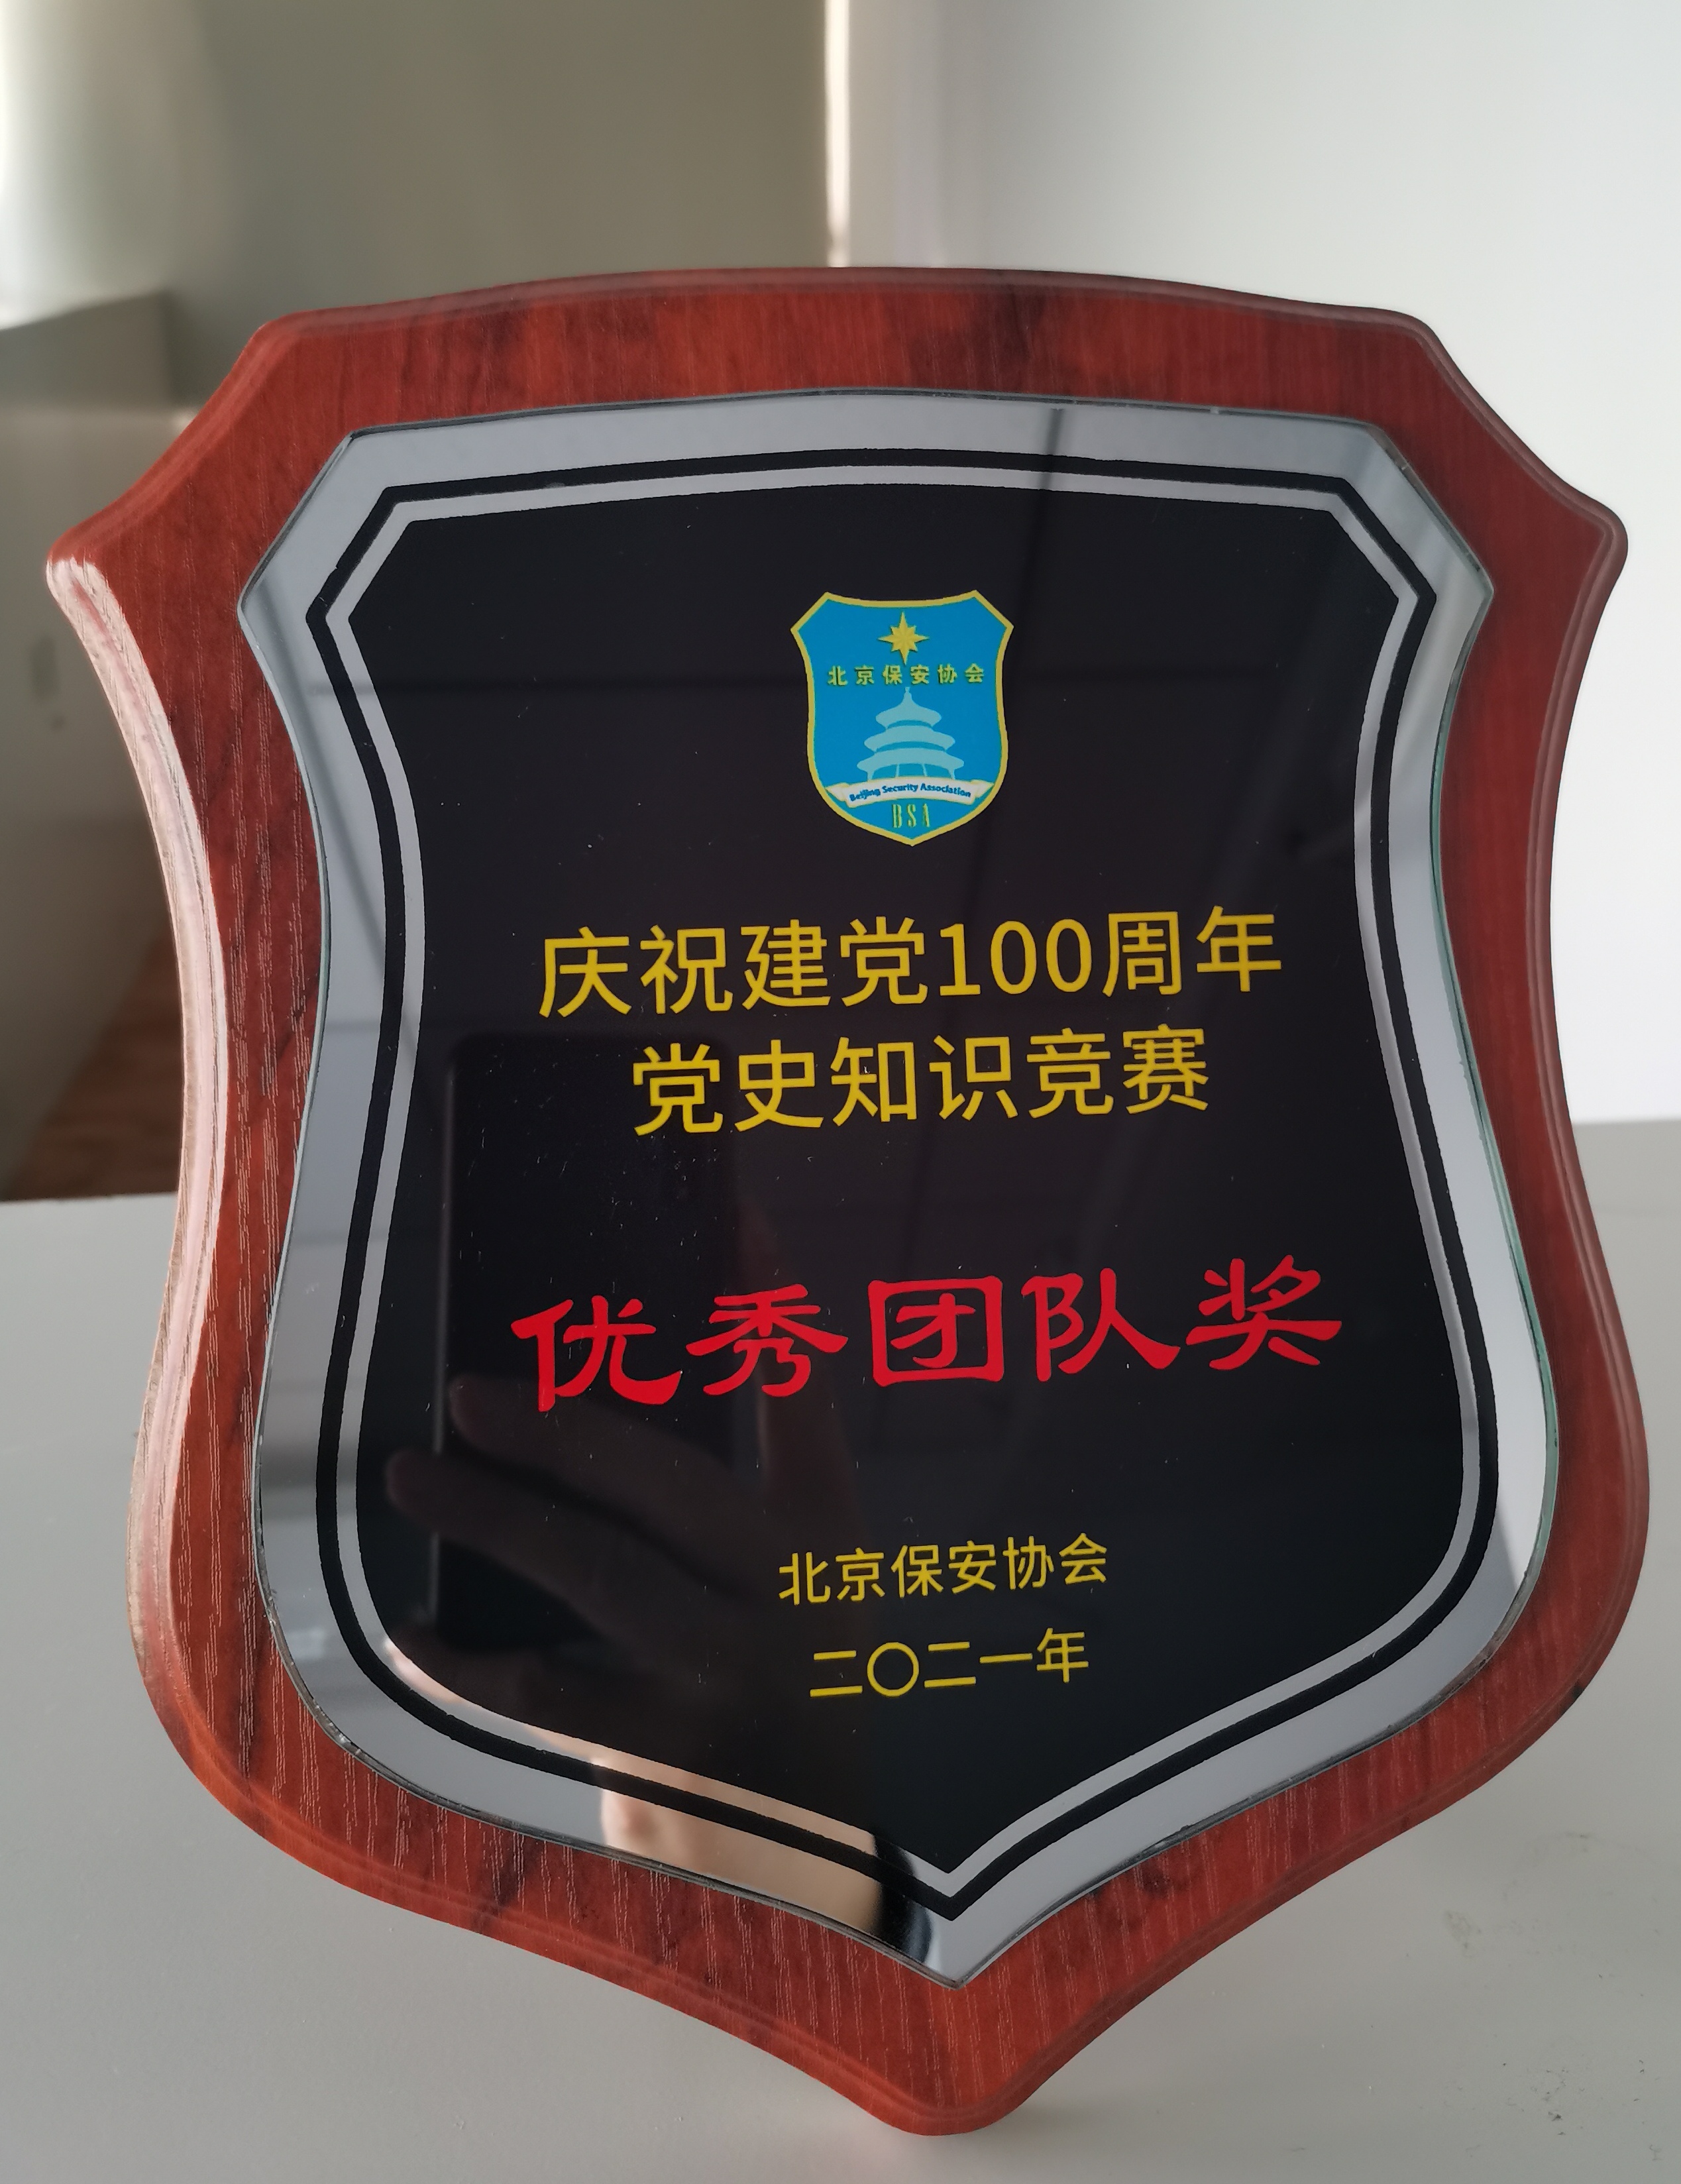 公司在北京保安协会举办的2021年庆祝建党100周年“党史知识竞赛”上获得优秀团队奖